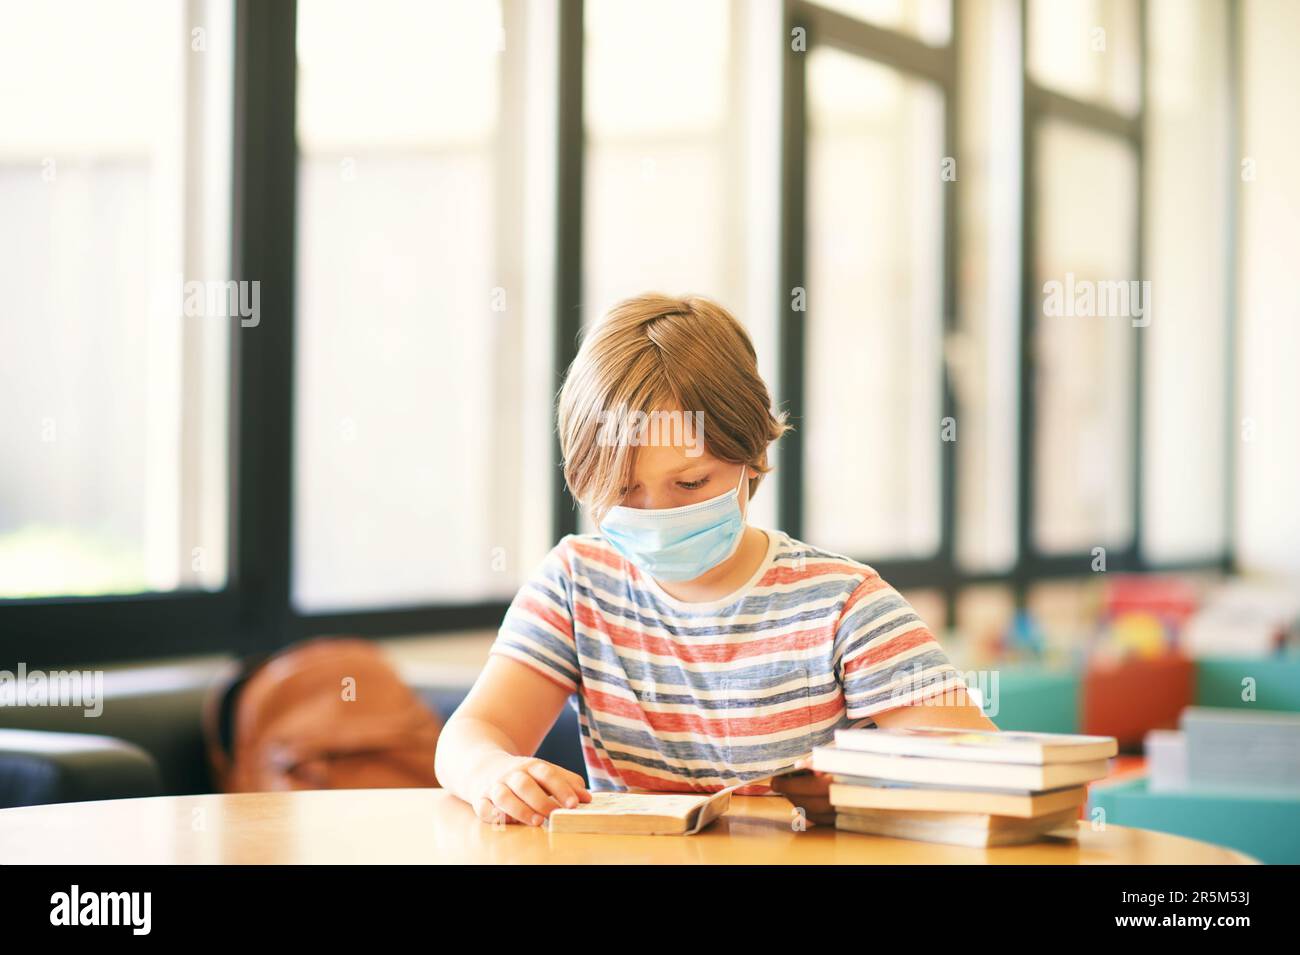 Ein kleiner Junge sitzt in einem Klassenzimmer oder einer Bibliothek, trägt eine Gesichtsmaske, hält ein Buch, zurück zur Schule Konzept Stockfoto